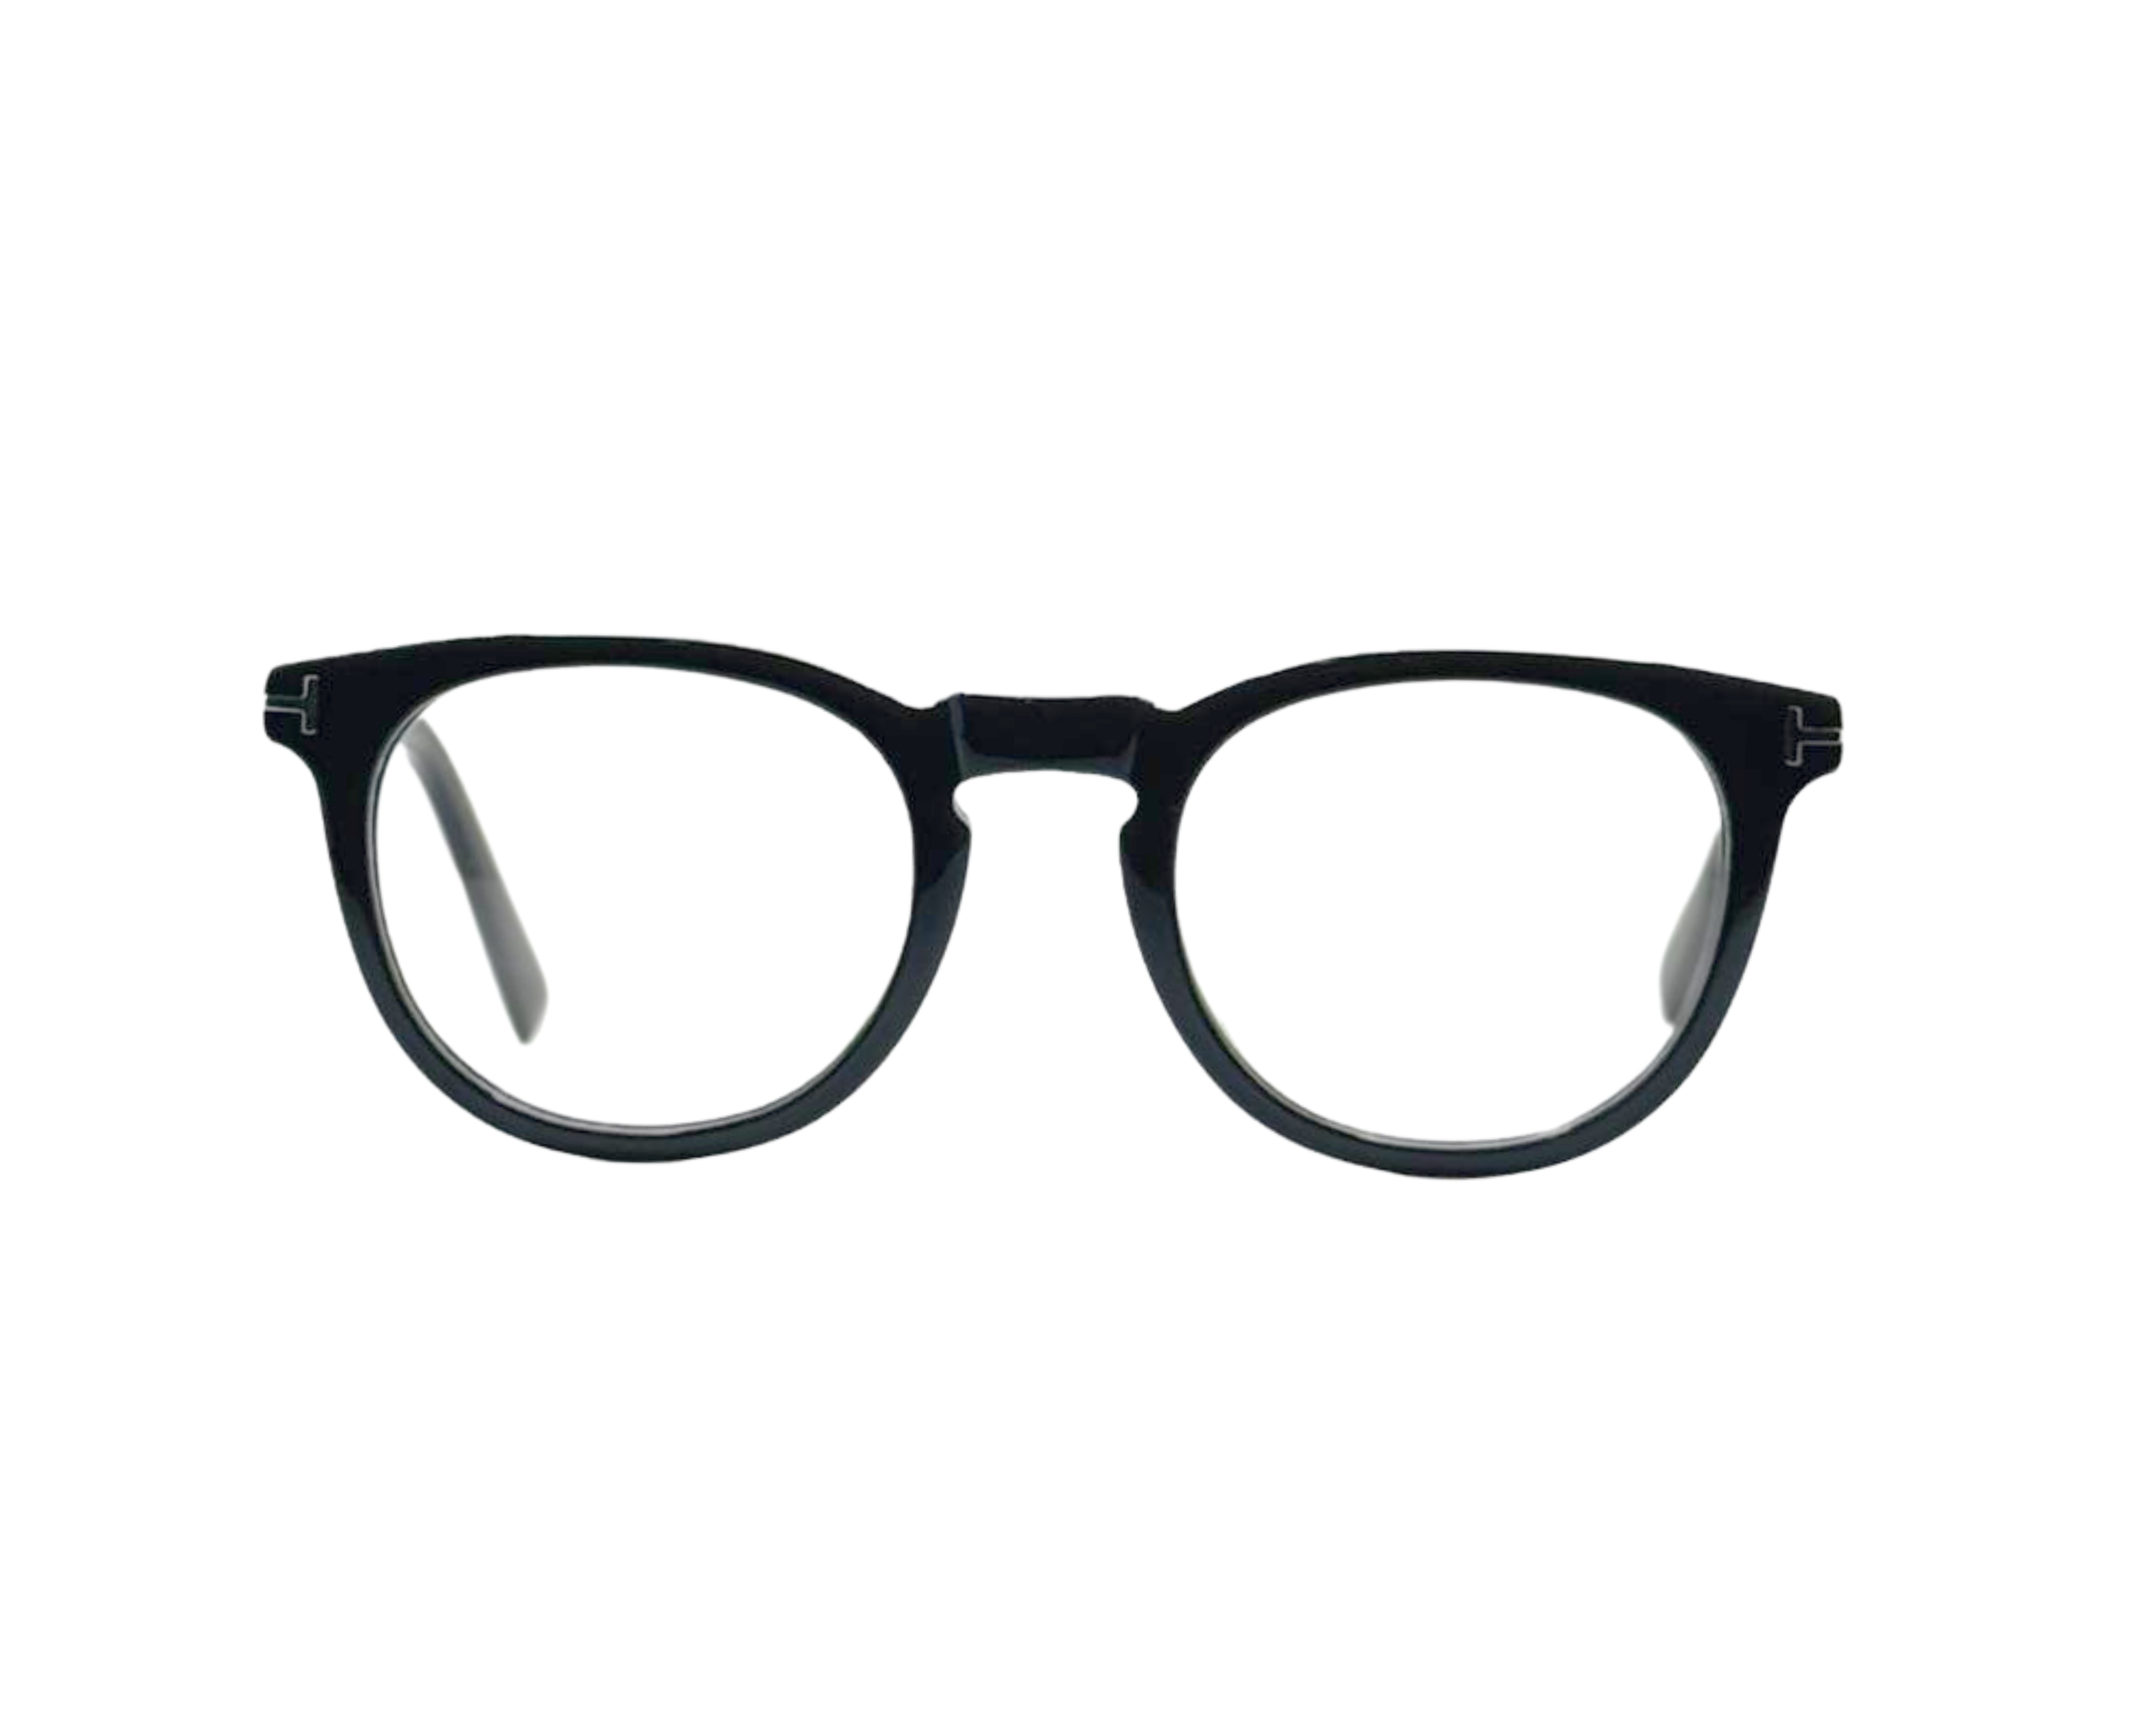 NS Luxury - J01 - Black - Eyeglasses